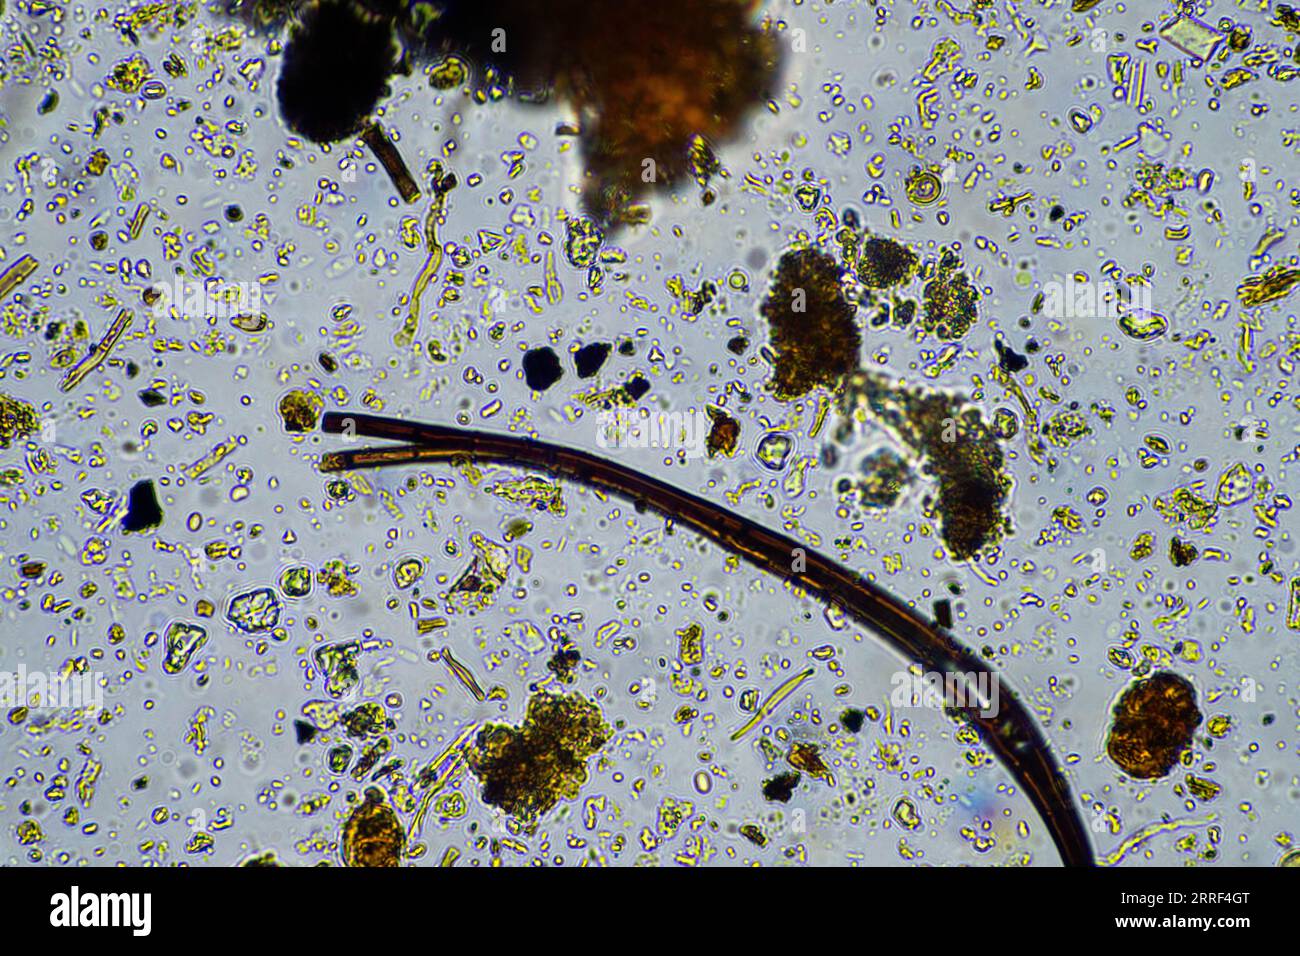 vita del suolo al microscopio con funghi del suolo e ifi fungine in un'azienda agricola Foto Stock